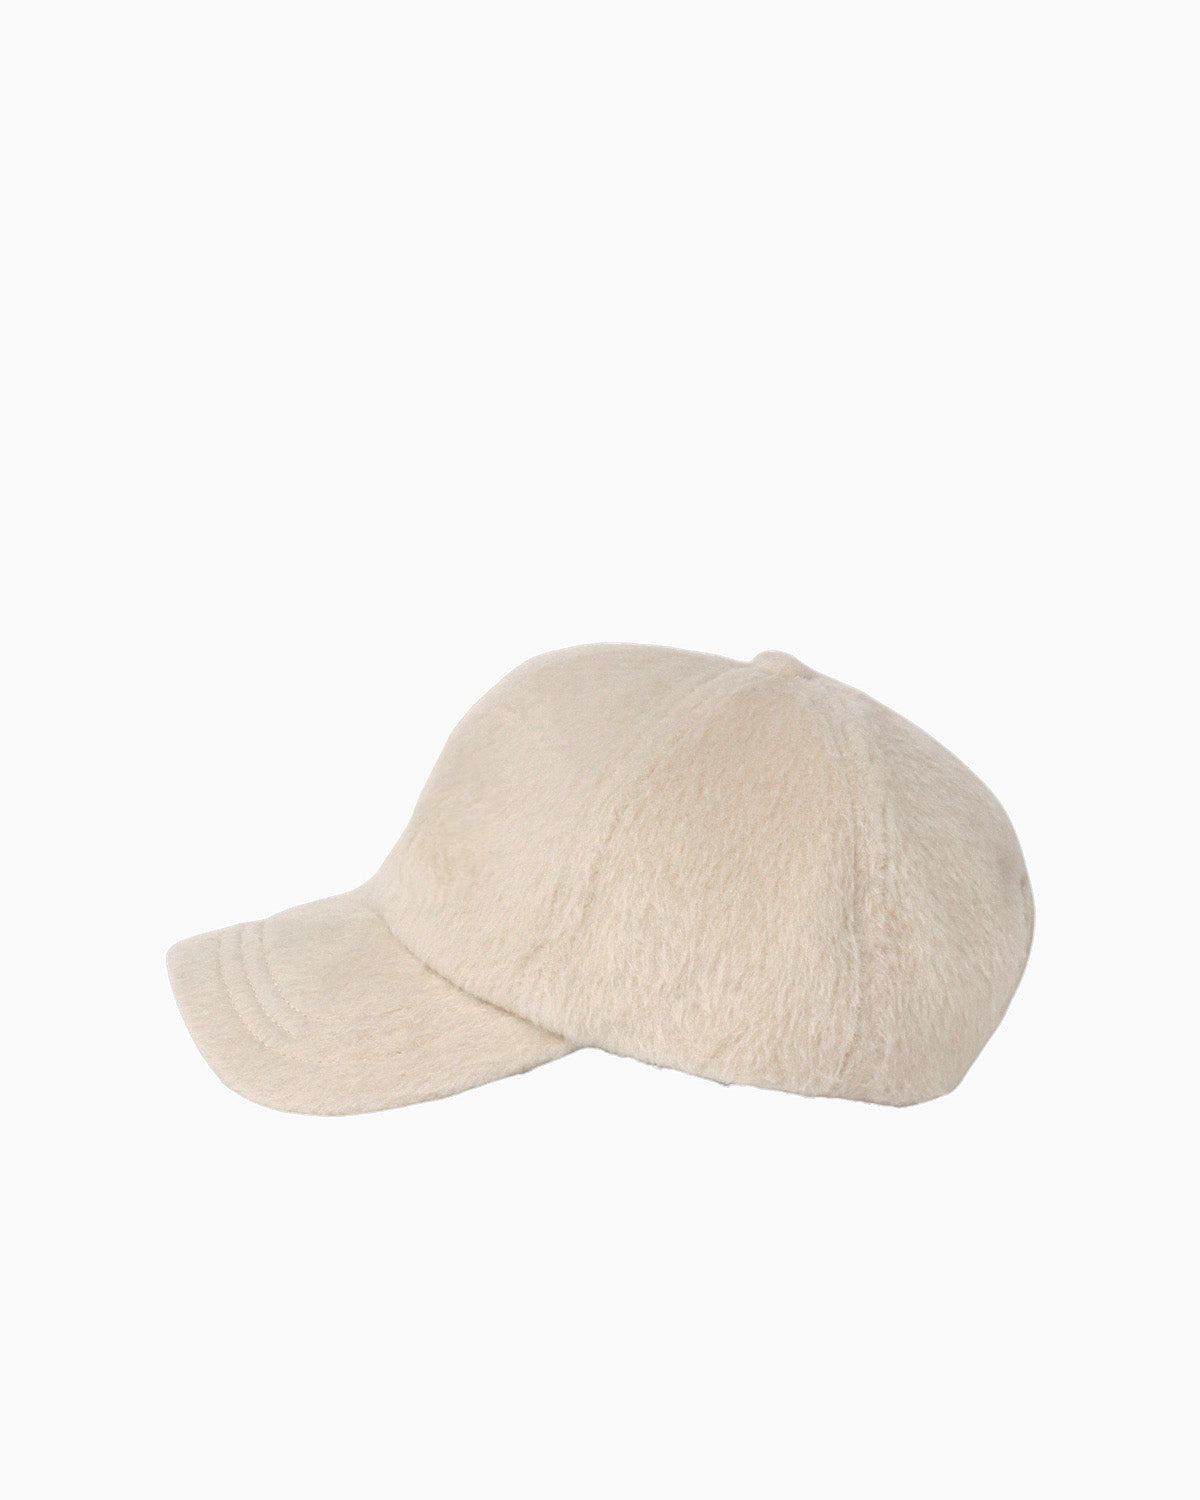 SHAGGY CAP